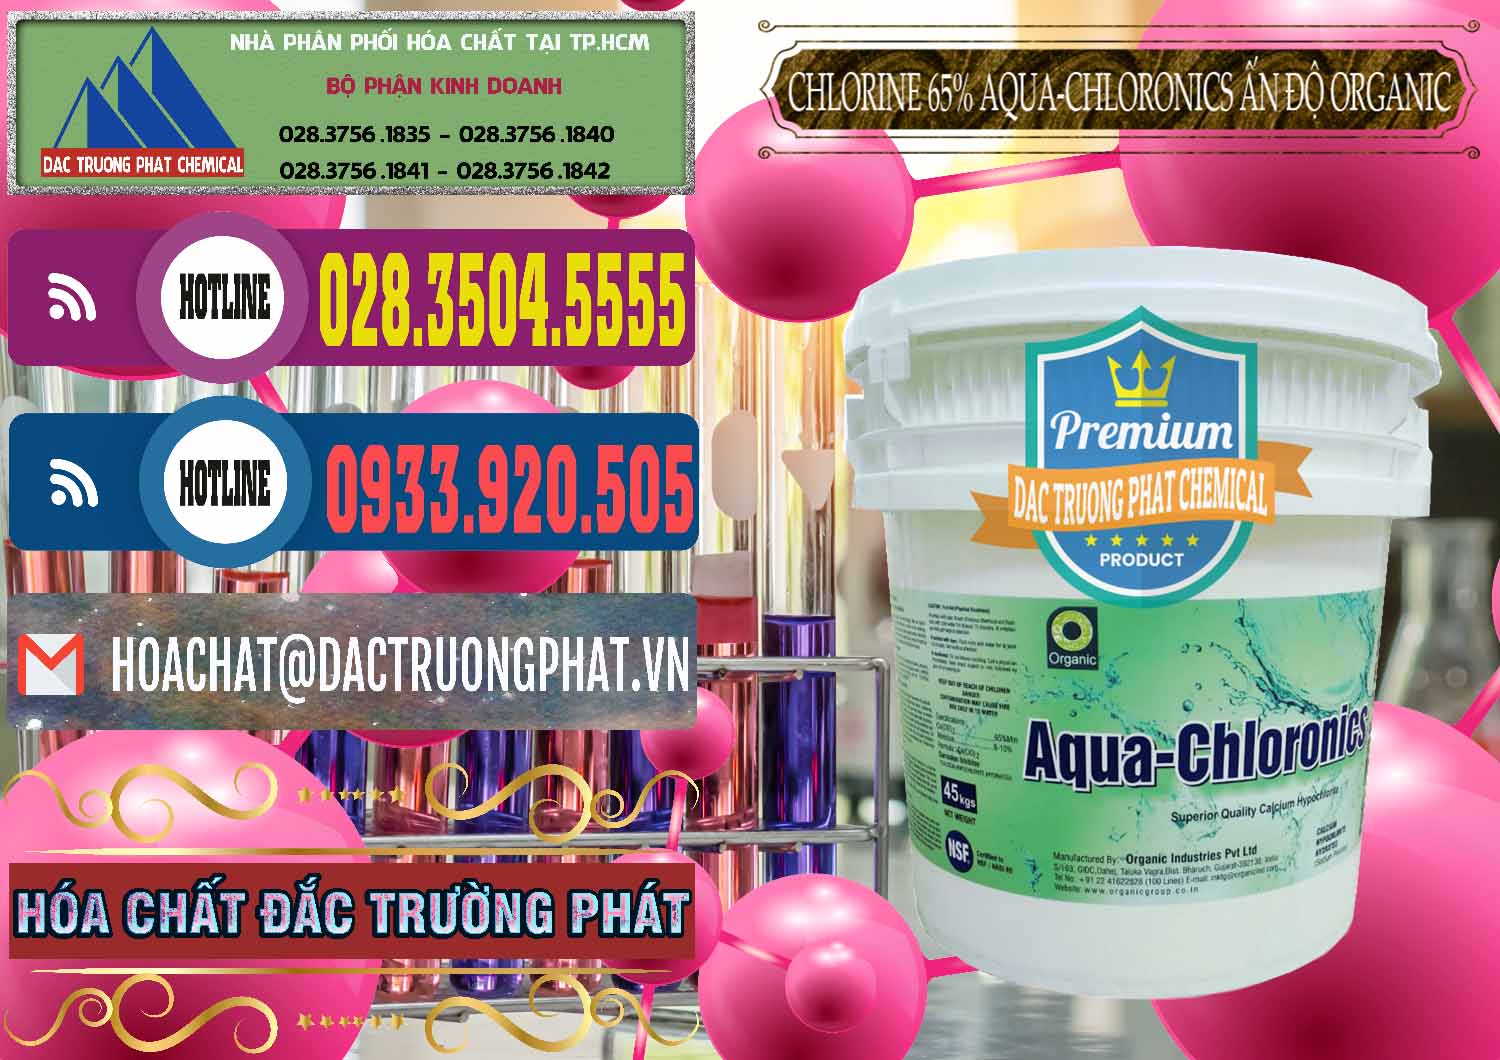 Cty chuyên kinh doanh _ bán Chlorine – Clorin 65% Aqua-Chloronics Ấn Độ Organic India - 0210 - Công ty bán - cung cấp hóa chất tại TP.HCM - muabanhoachat.com.vn